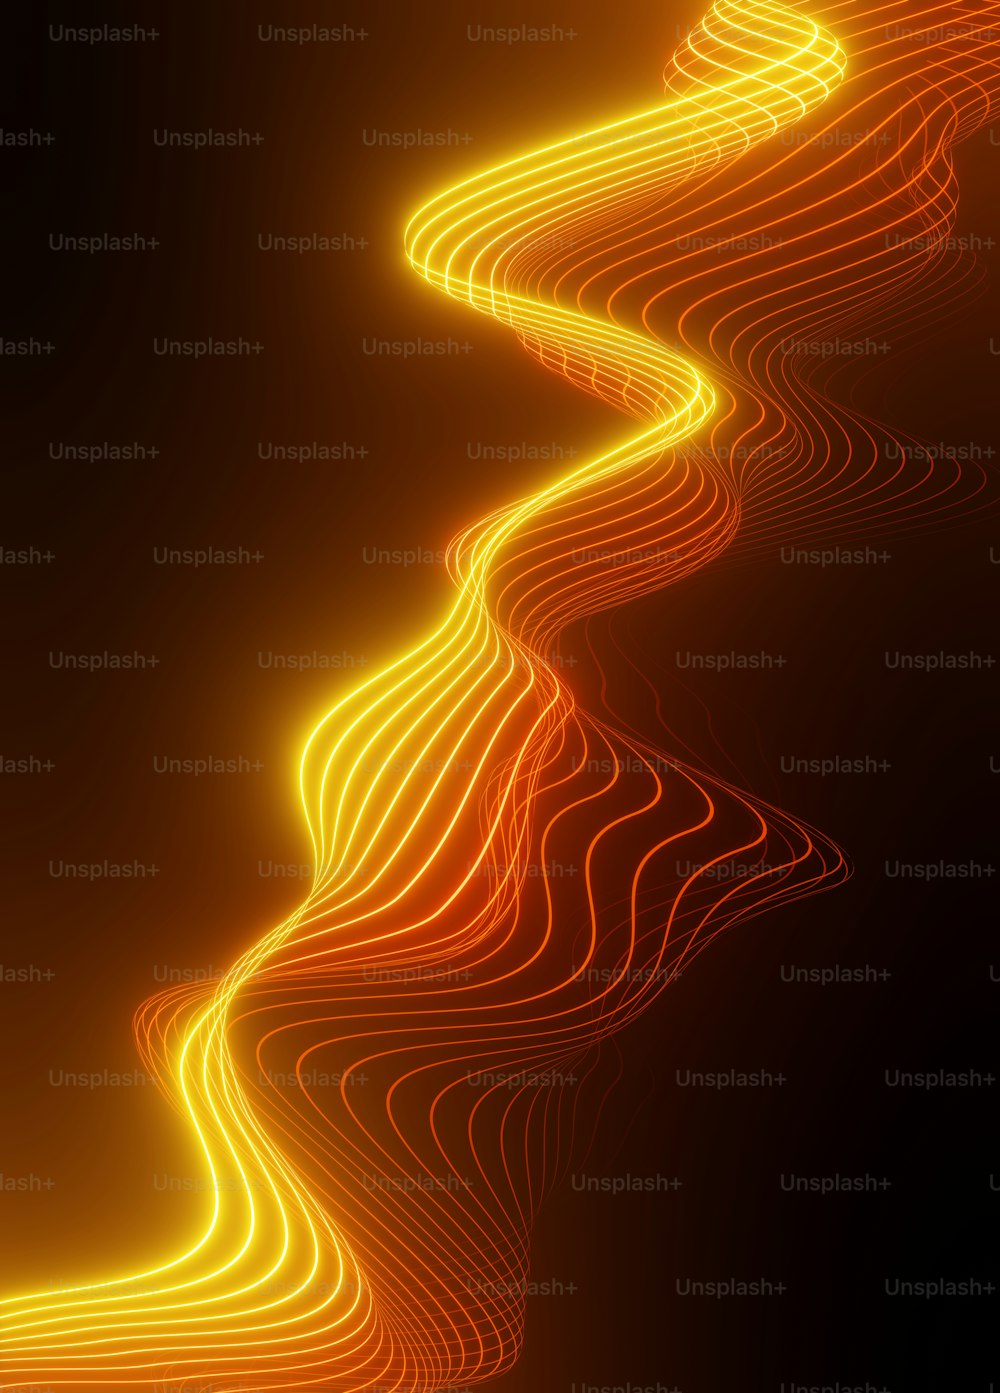 Un'immagine astratta di una linea arancione ondulata